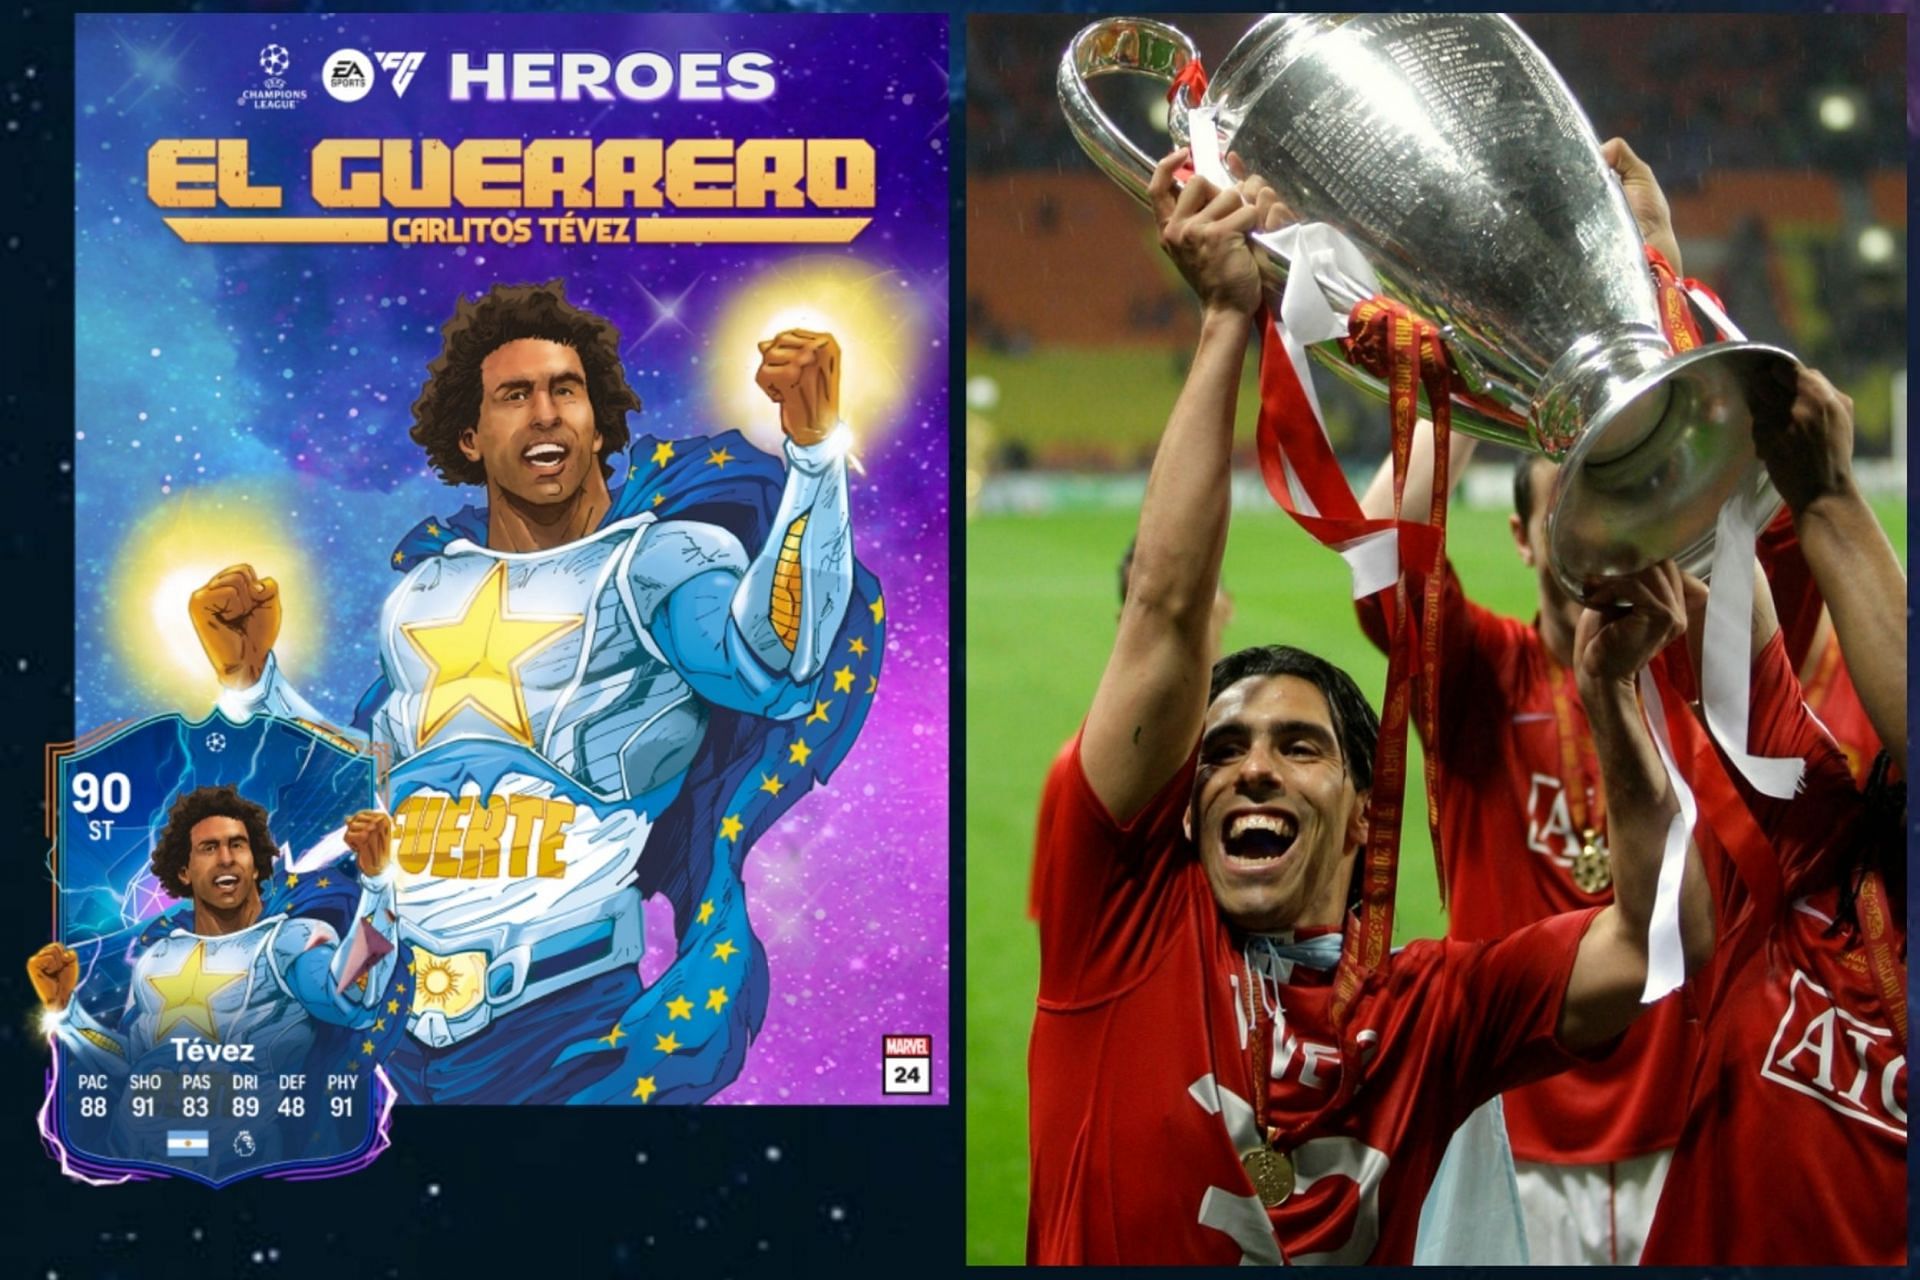 arlos Tevez - 1st in Best UEFA Heroes in EA FC 24 list (Image via EA Sports and UEFA)